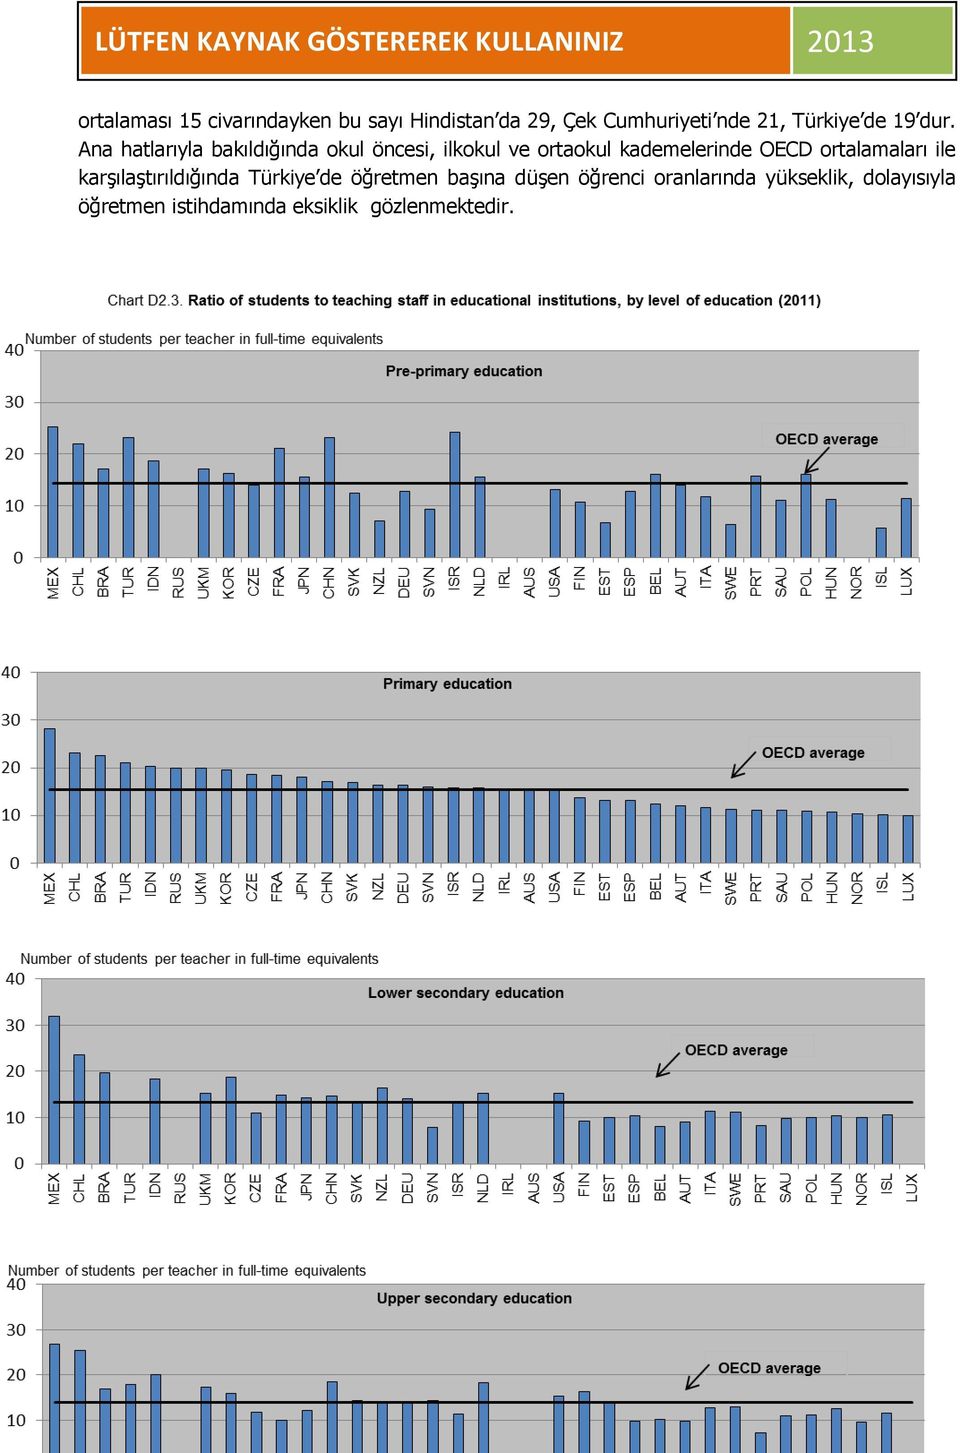 Ana hatlarıyla bakıldığında okul öncesi, ilkokul ve ortaokul kademelerinde OECD